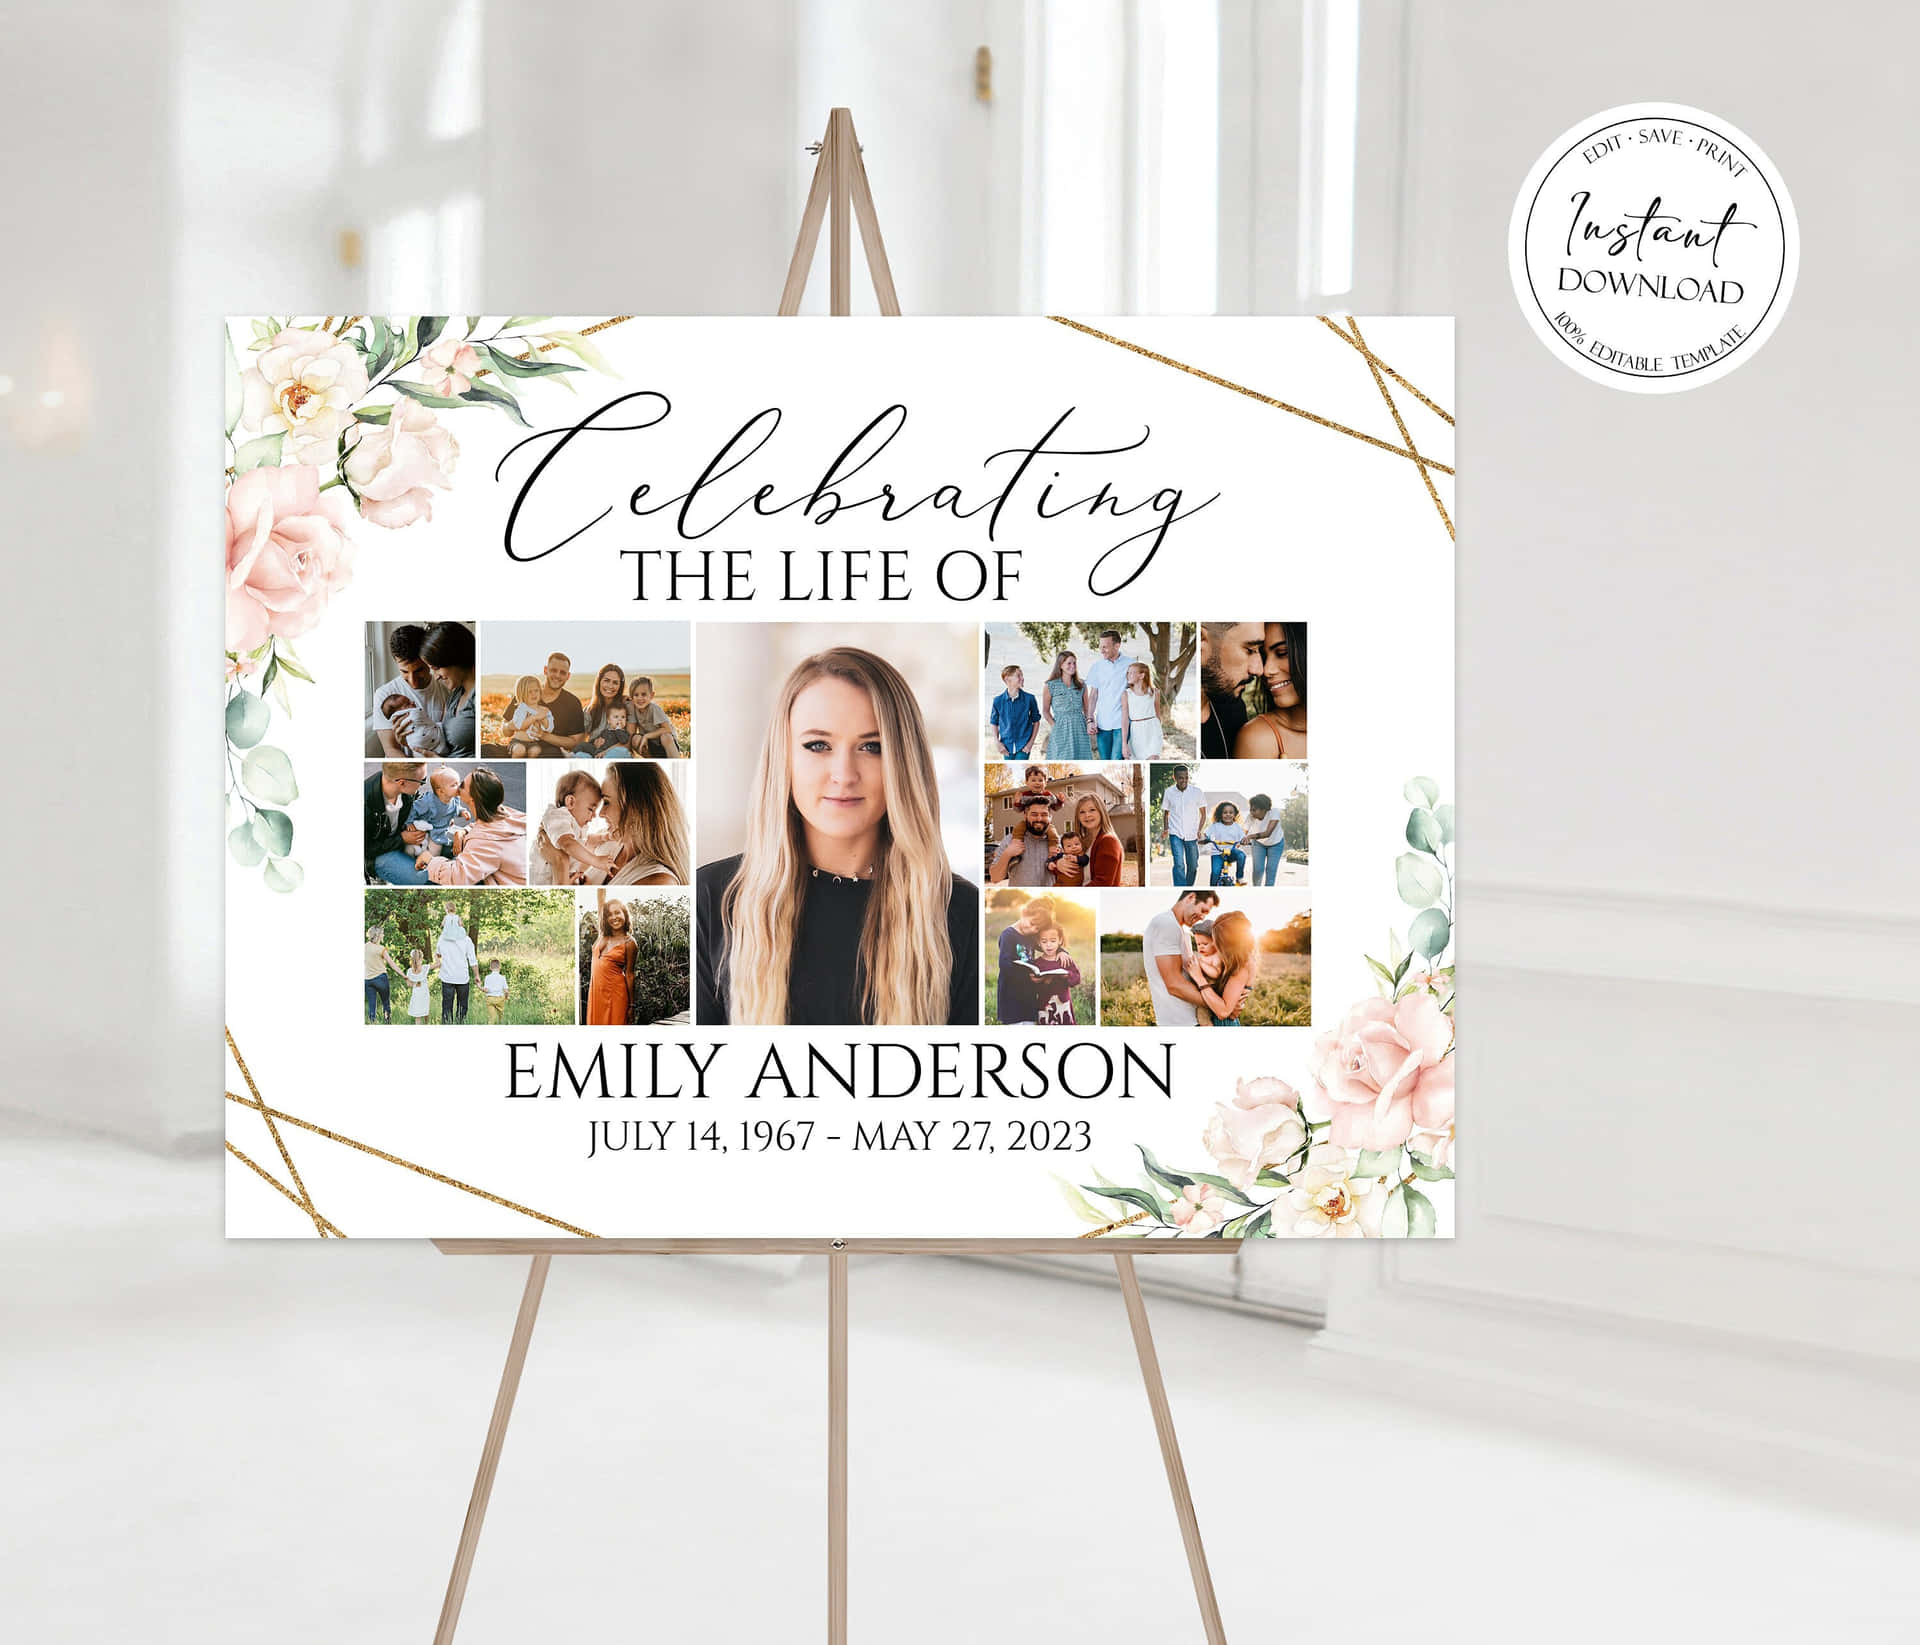 Dasleben Von Emily Anderson Feiern - Easel-schild